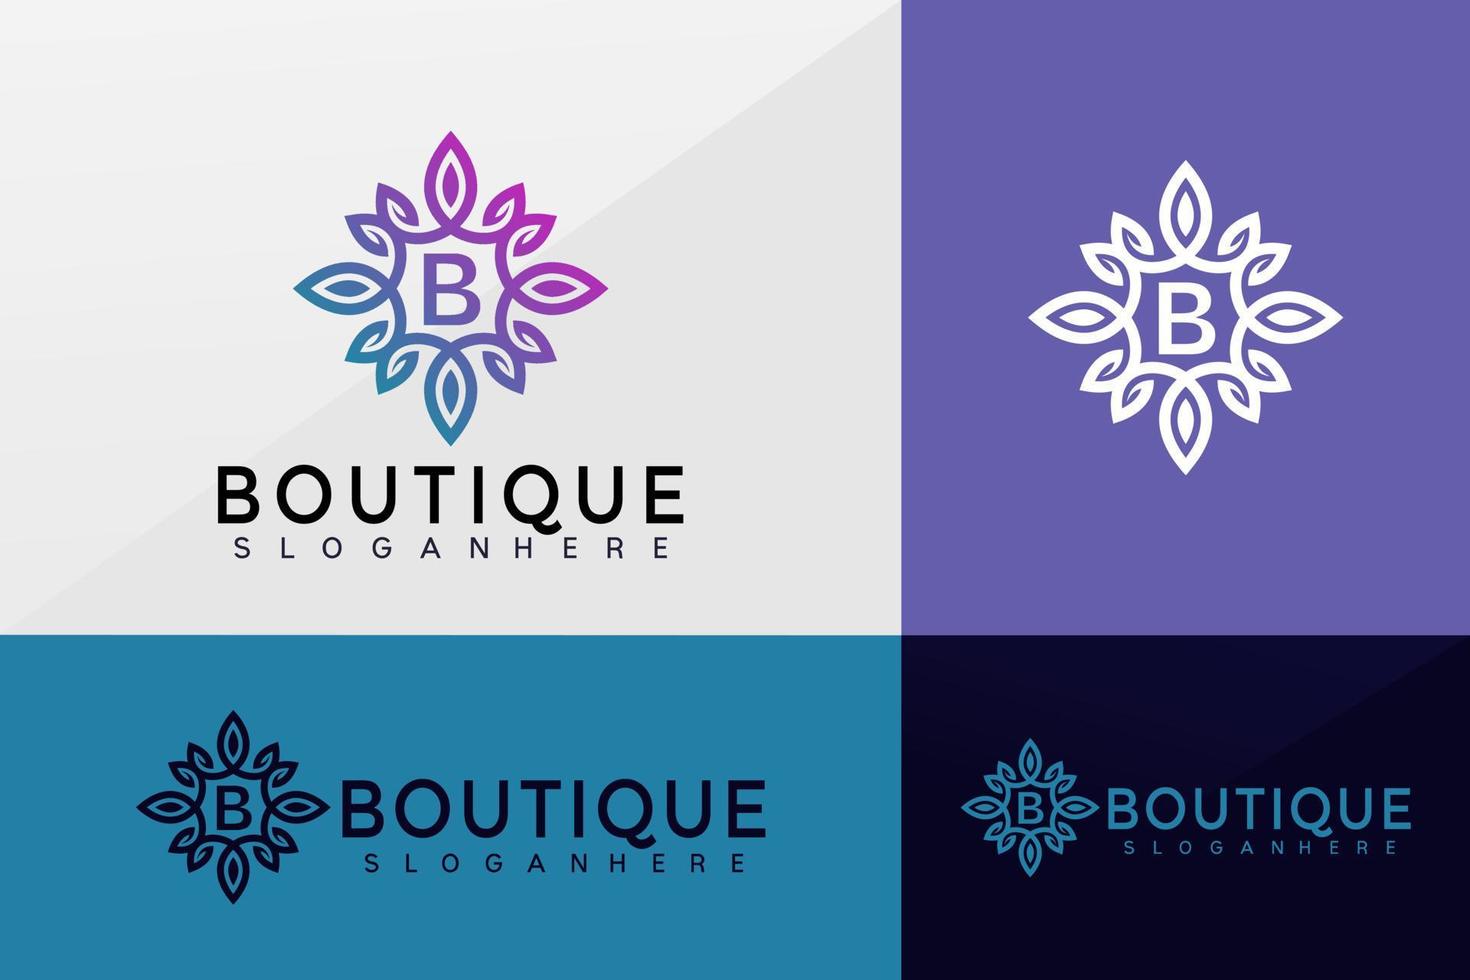 vettore logo boutique di fiori, design di loghi di loto, logo moderno, modello di illustrazione vettoriale di disegni di logo